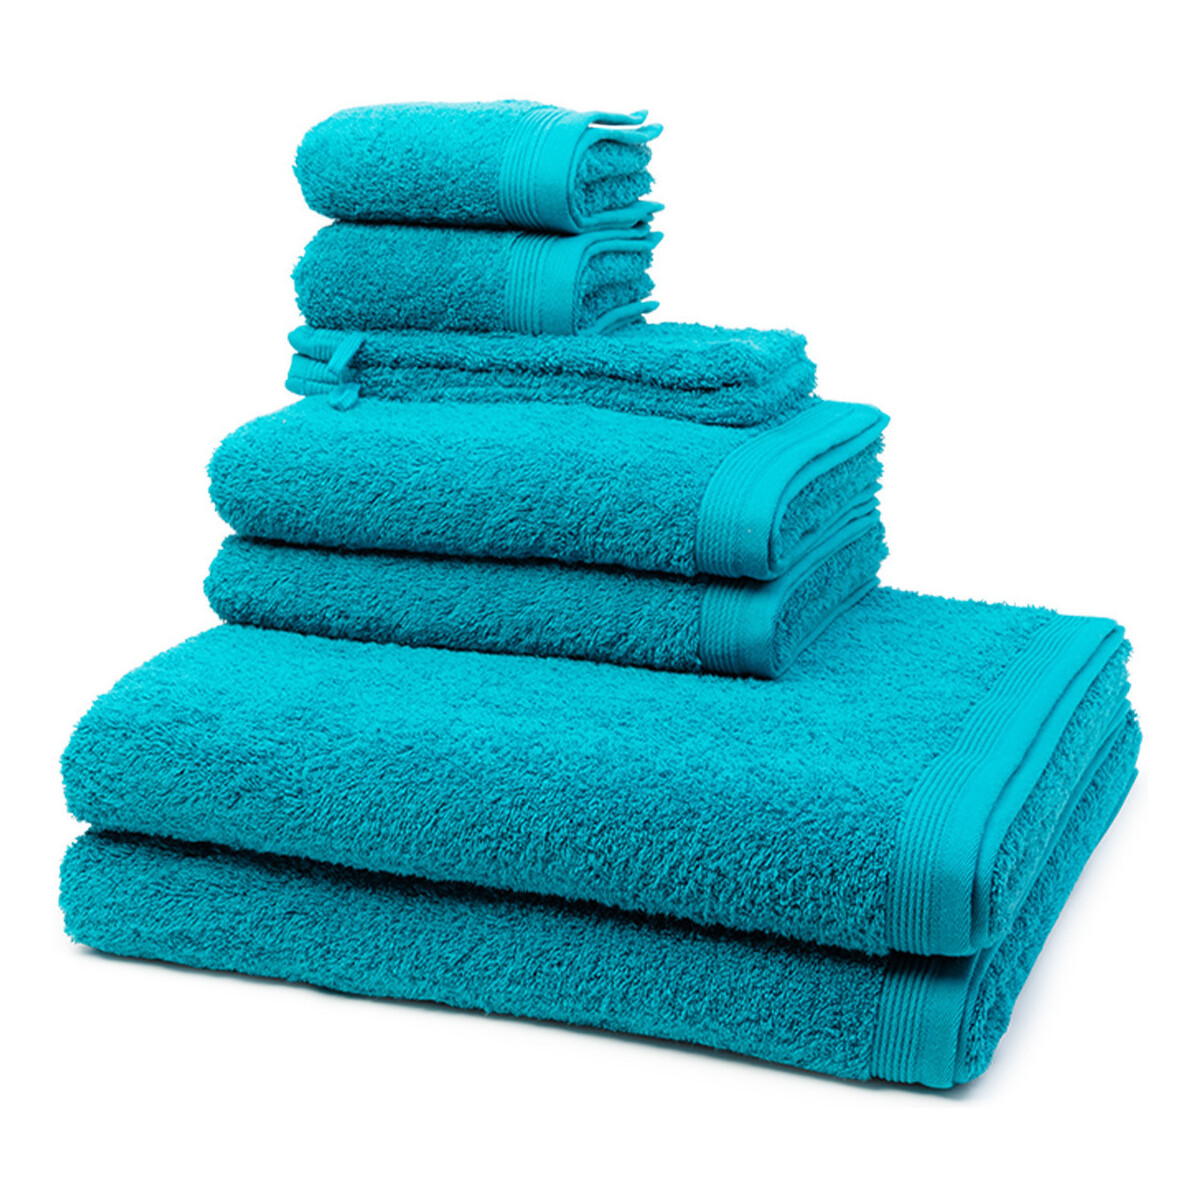 Home Handtuch und Waschlappen Möve Superwuschel Blau